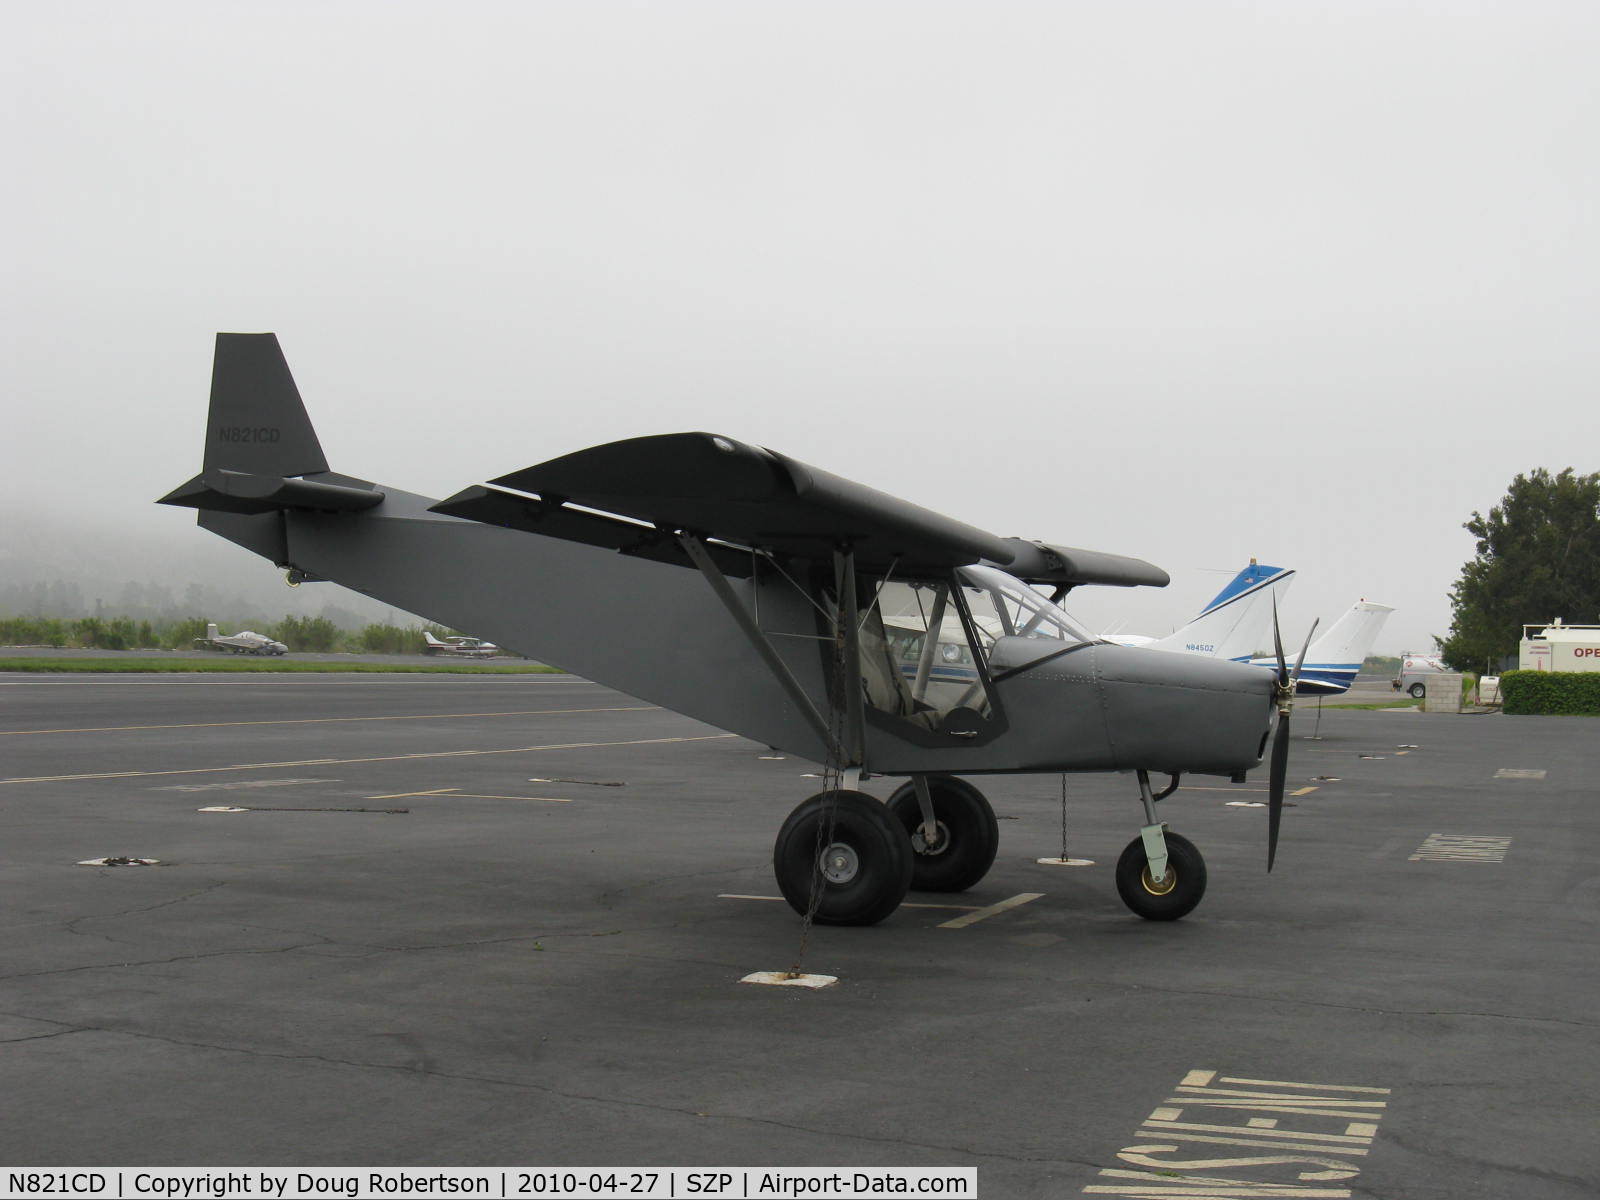 N821CD, Zenith STOL CH-701 C/N 7-4094, 2010 Desmond ZENITH CH701, fixed slat high-lift STOL wing